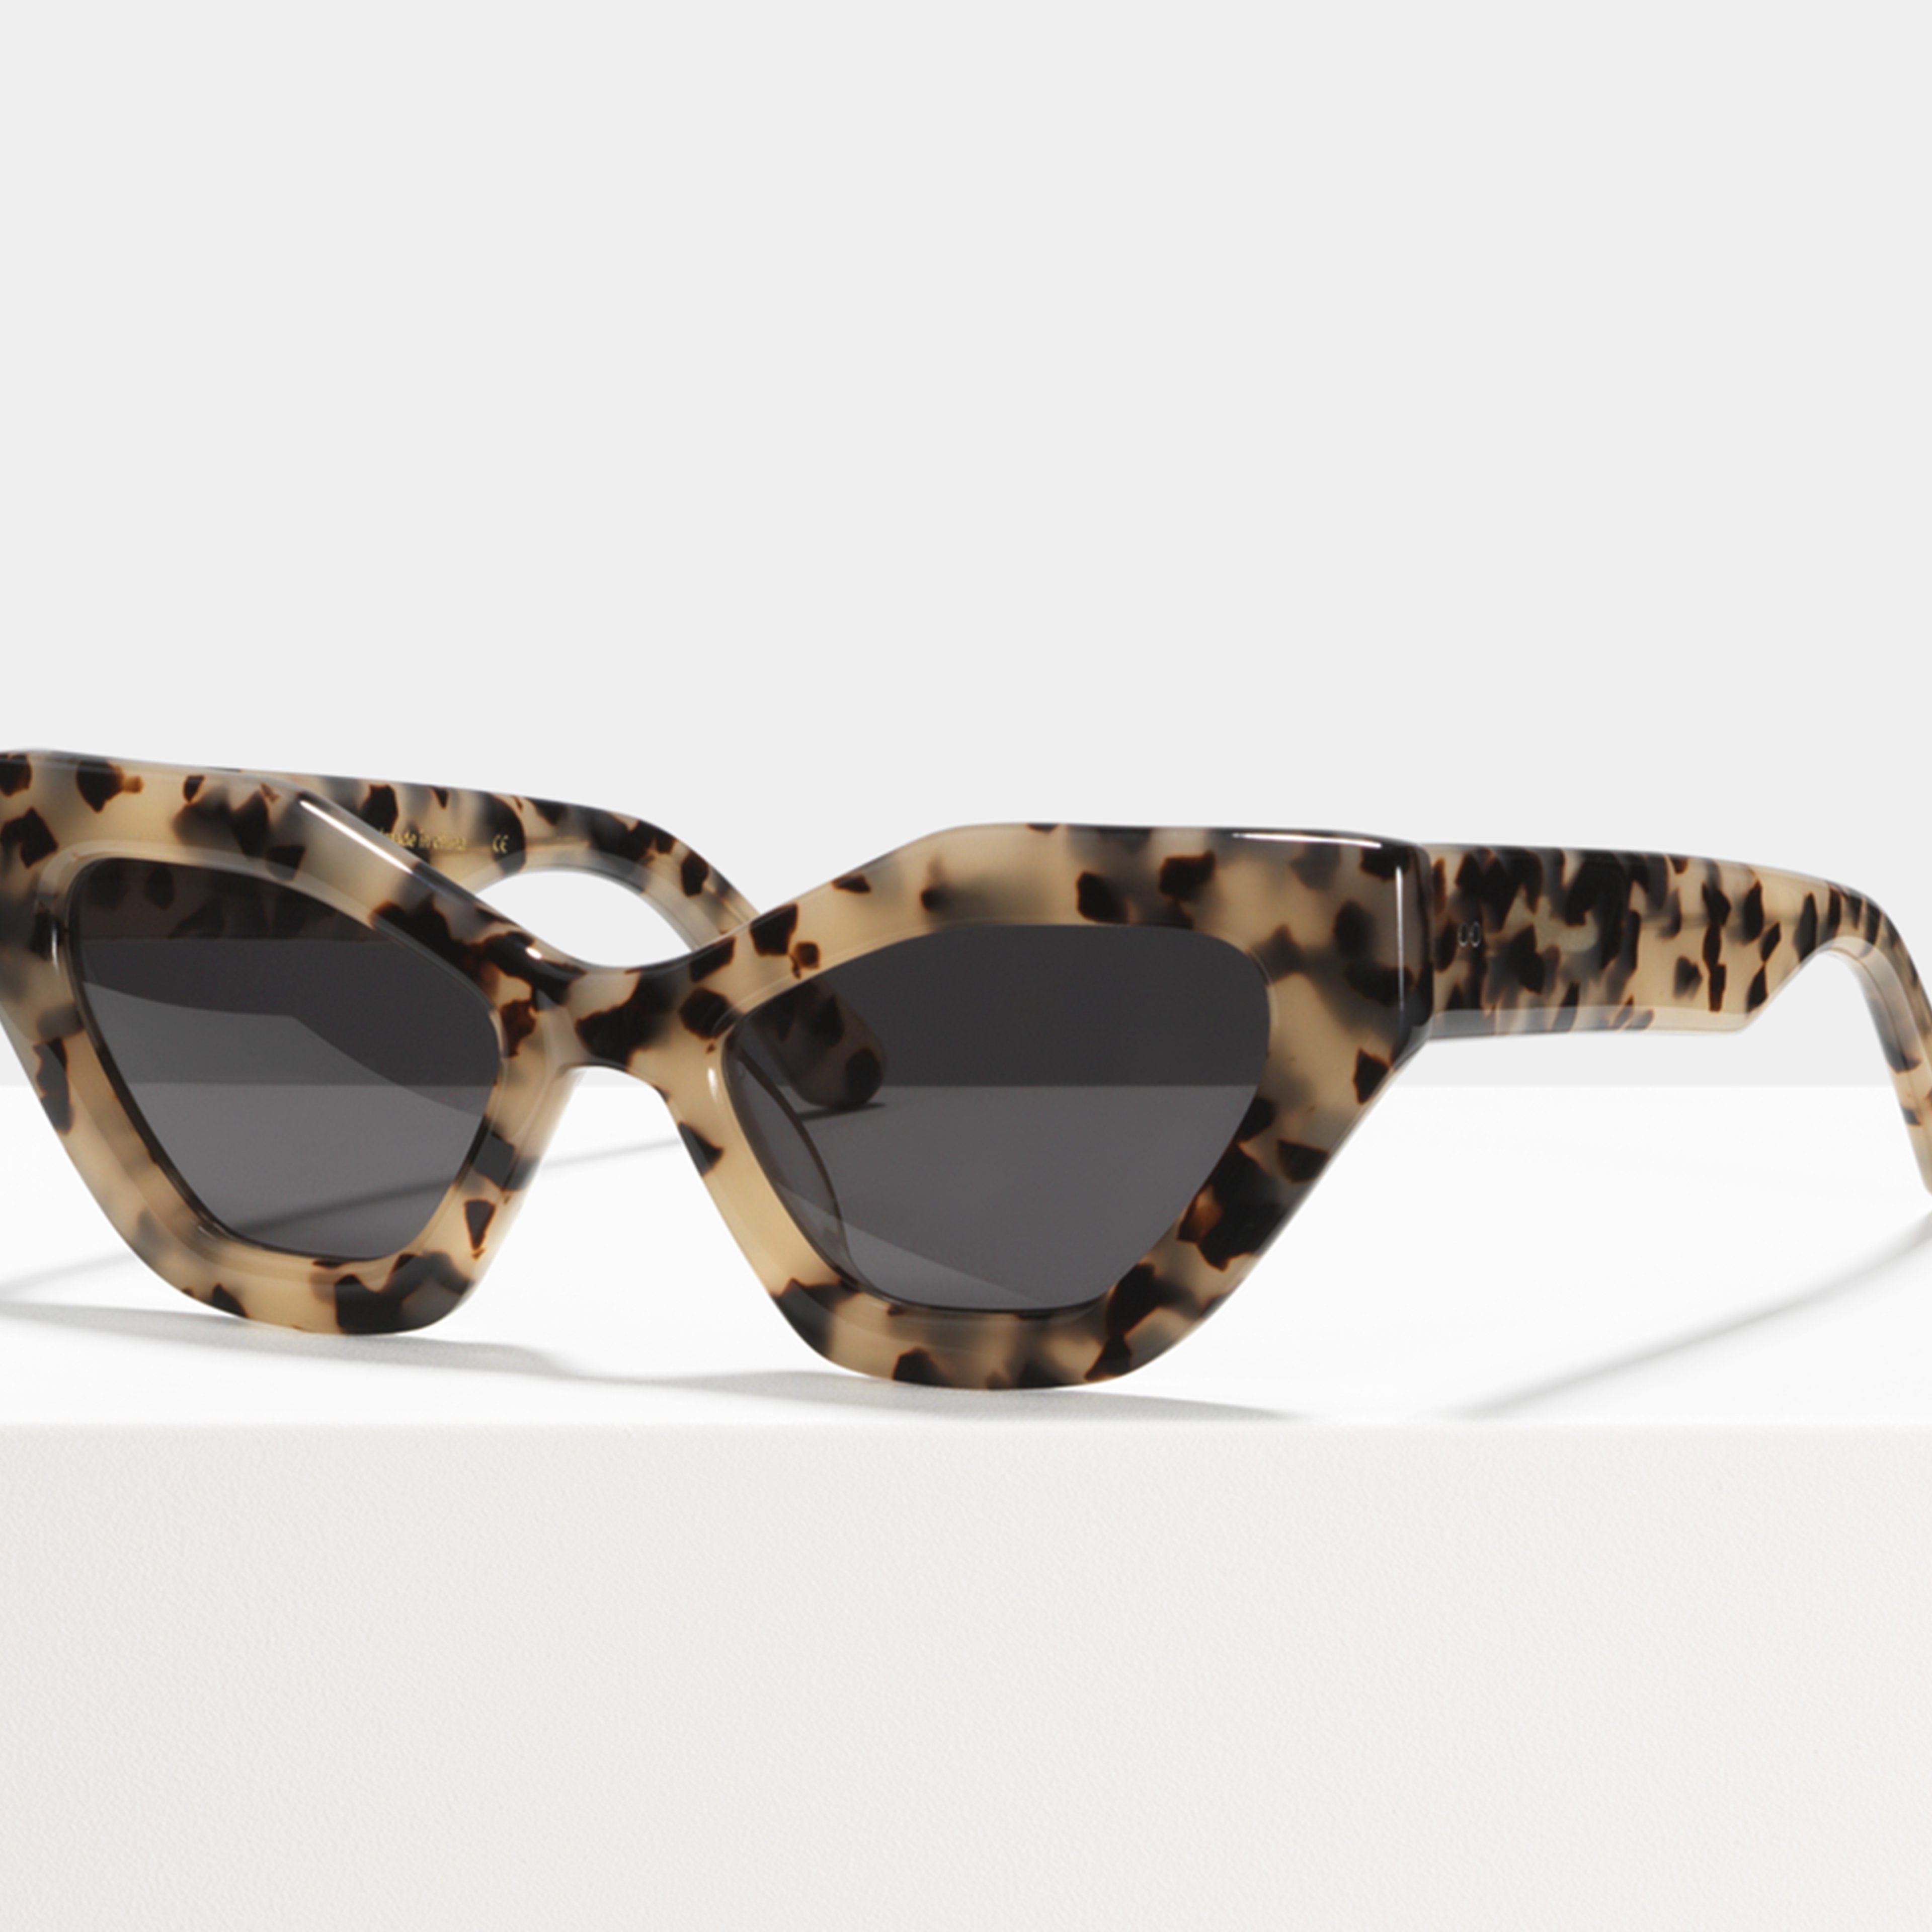 Ace & Tate Sunglasses |  Acetate in Beige, Brown